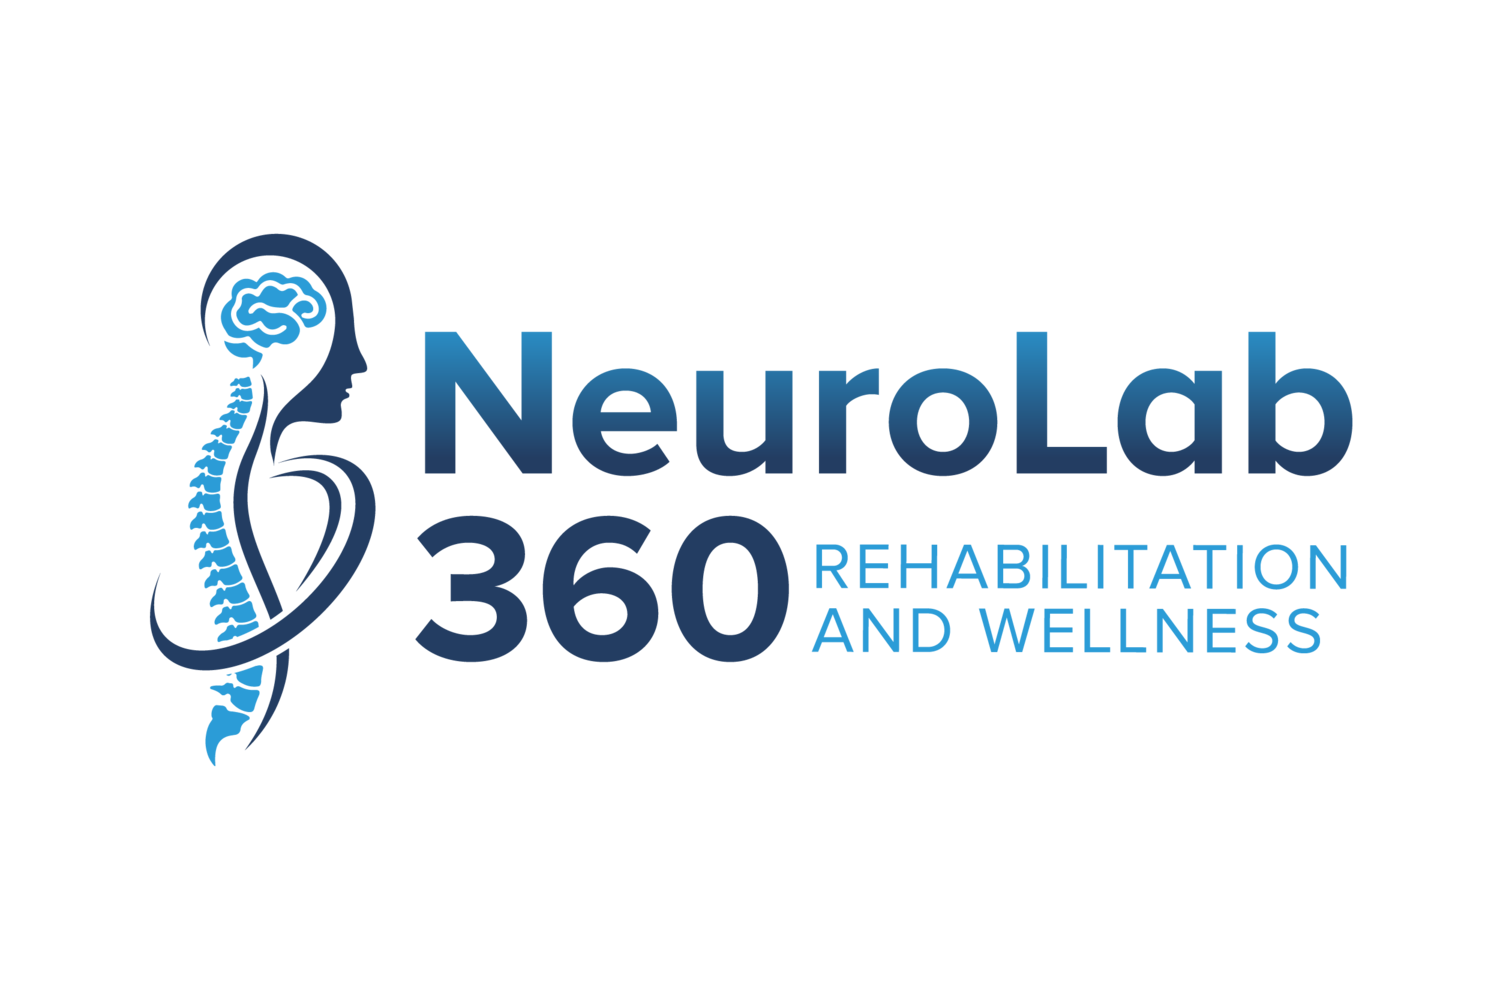 NeuroLab 360